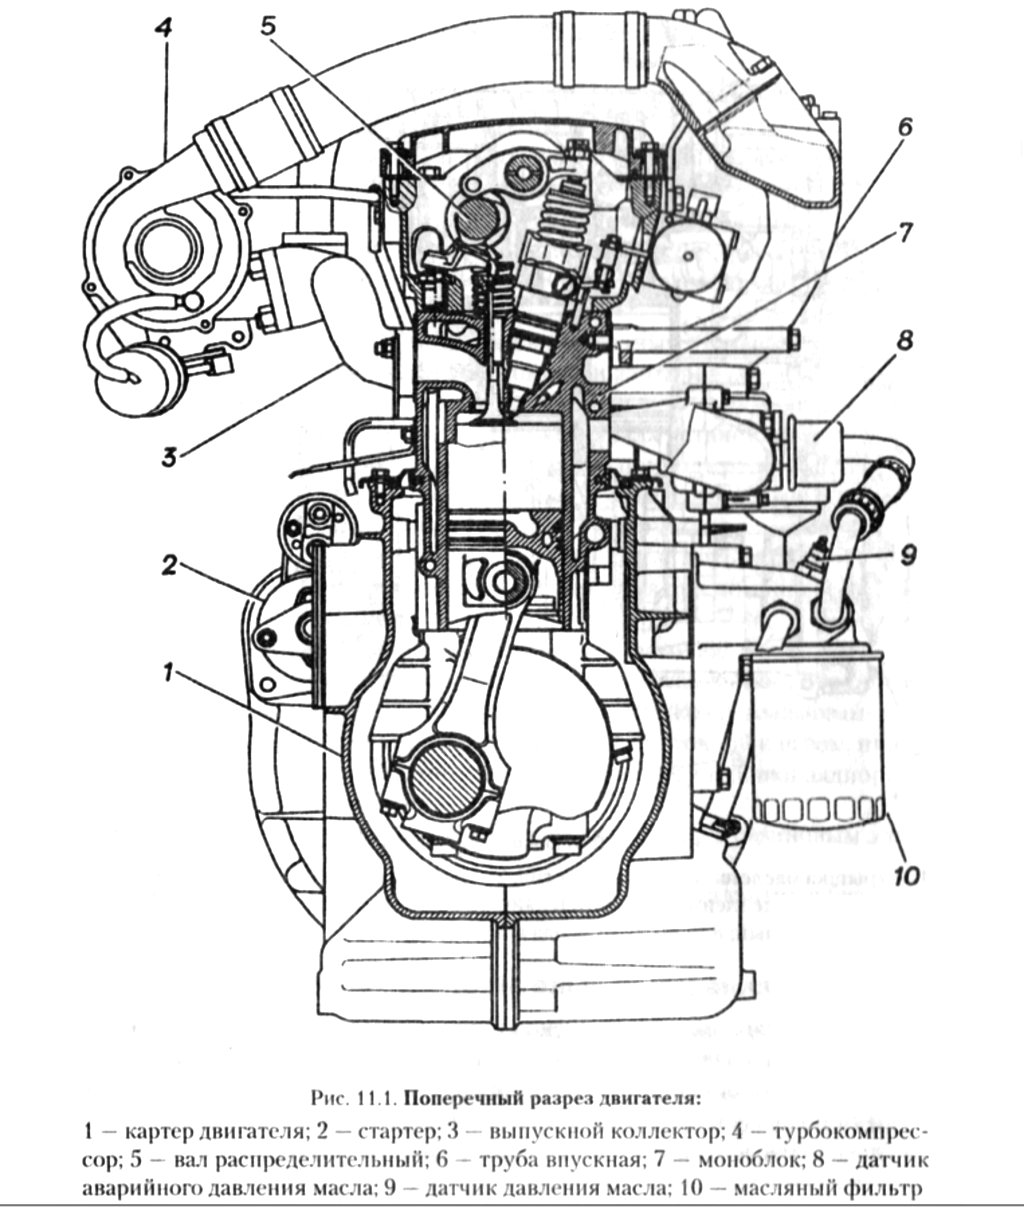 Давление двигателя умз. Двигатель УМЗ 4216 схема. Схема двигателя ГАЗ 560. Штаер 560 двигатель конструкция. Схема двигателя Штайер ГАЗ 560.